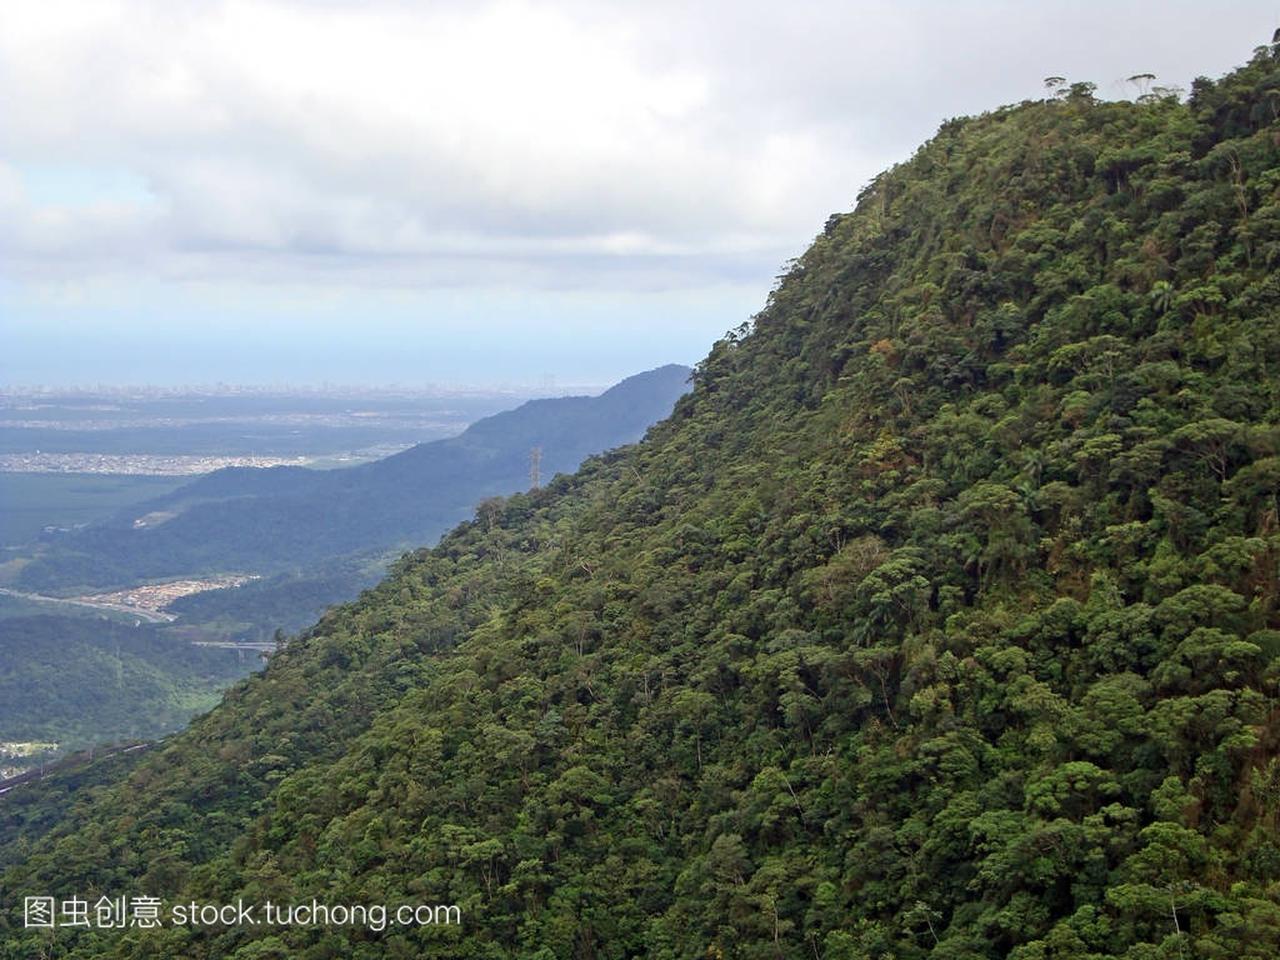 巴西圣保罗沿岸附近大西洋森林覆盖的山脉景观